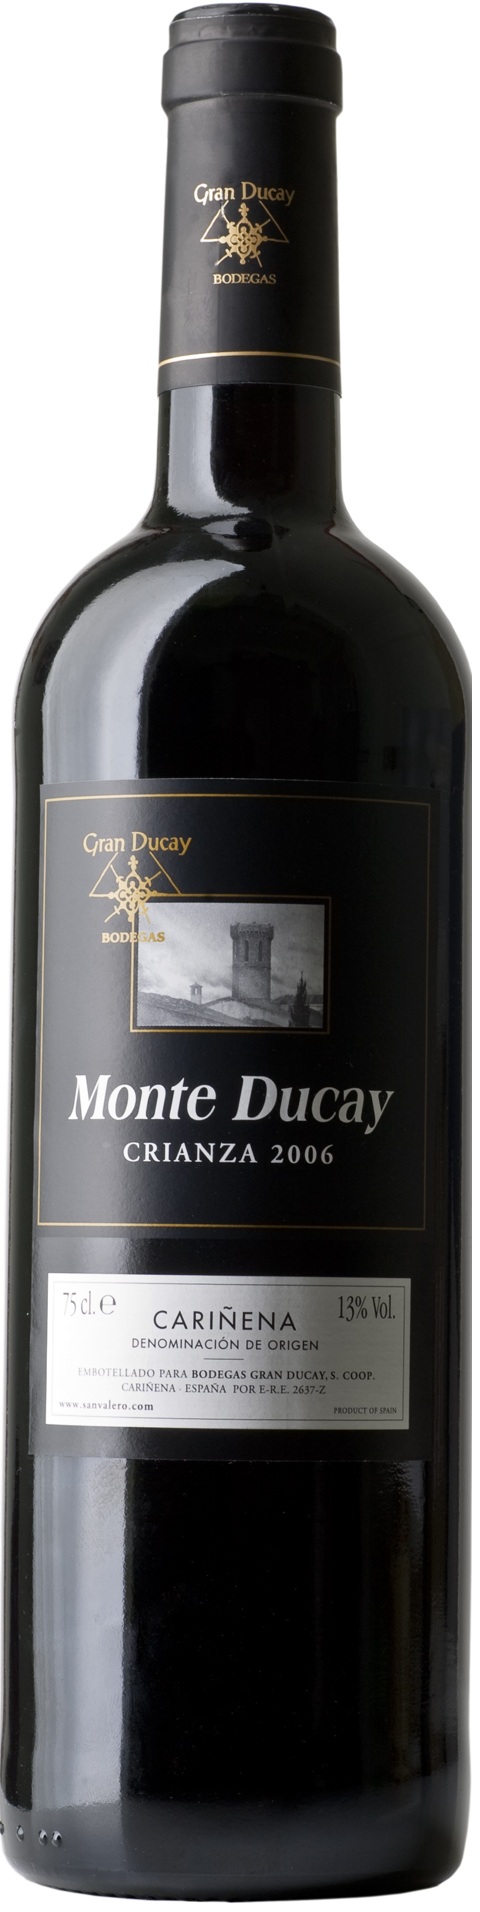 Imagen de la botella de Vino Monte Ducay Tinto Crianza